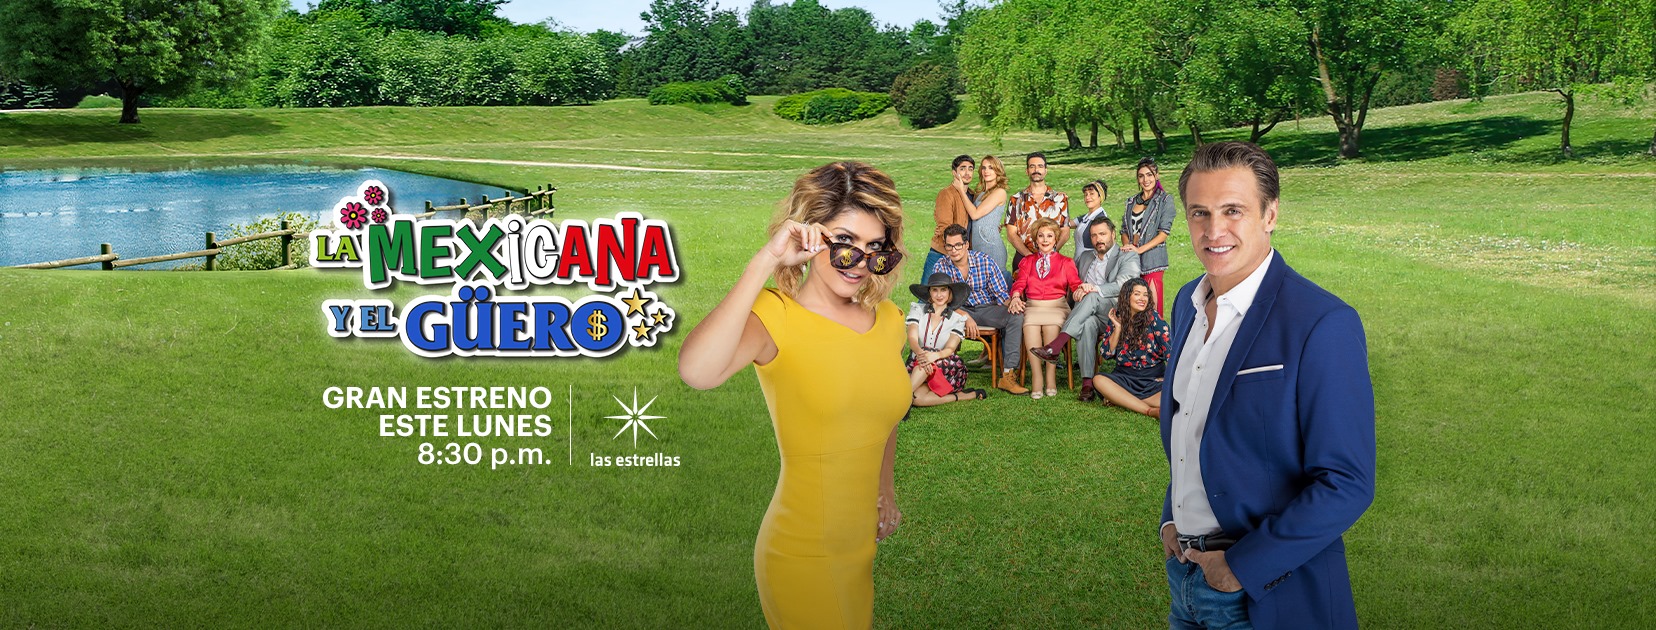 Hoy lunes 17 de agosto se estrena la telenovela “La Mexicana y el Güero”, a las 20:30 horas por “las estrellas”